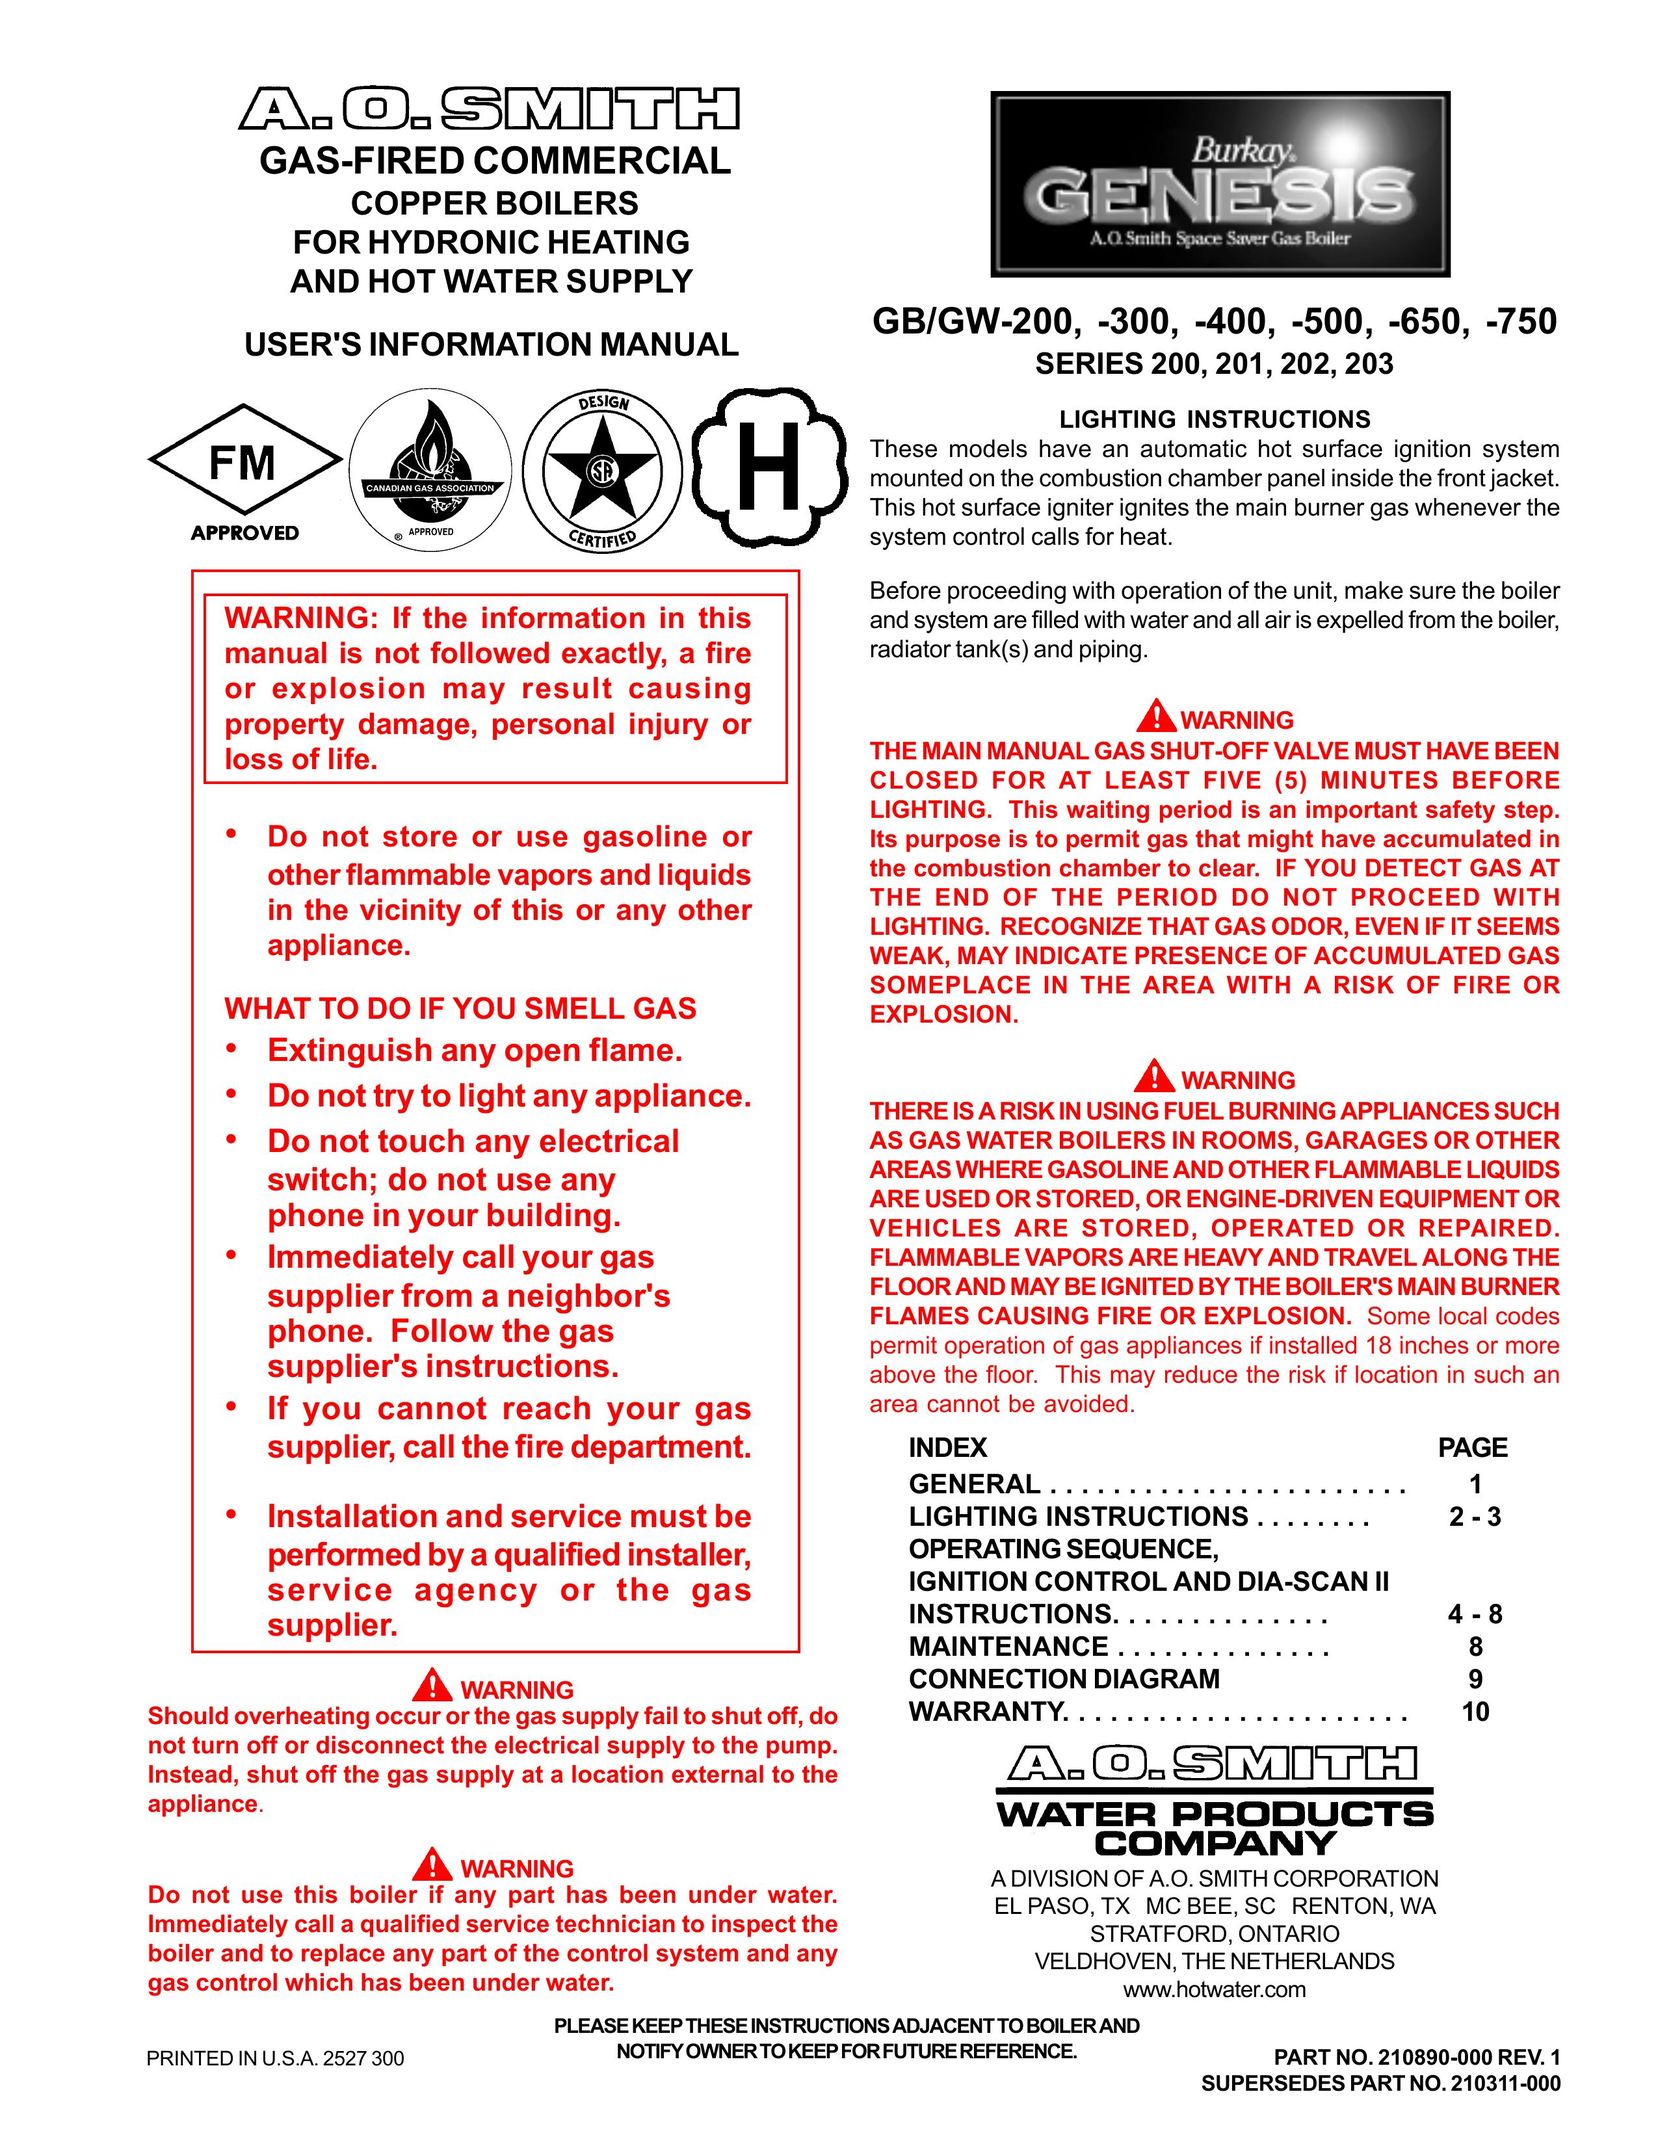 A.O. Smith GB/GW-400 Boiler User Manual